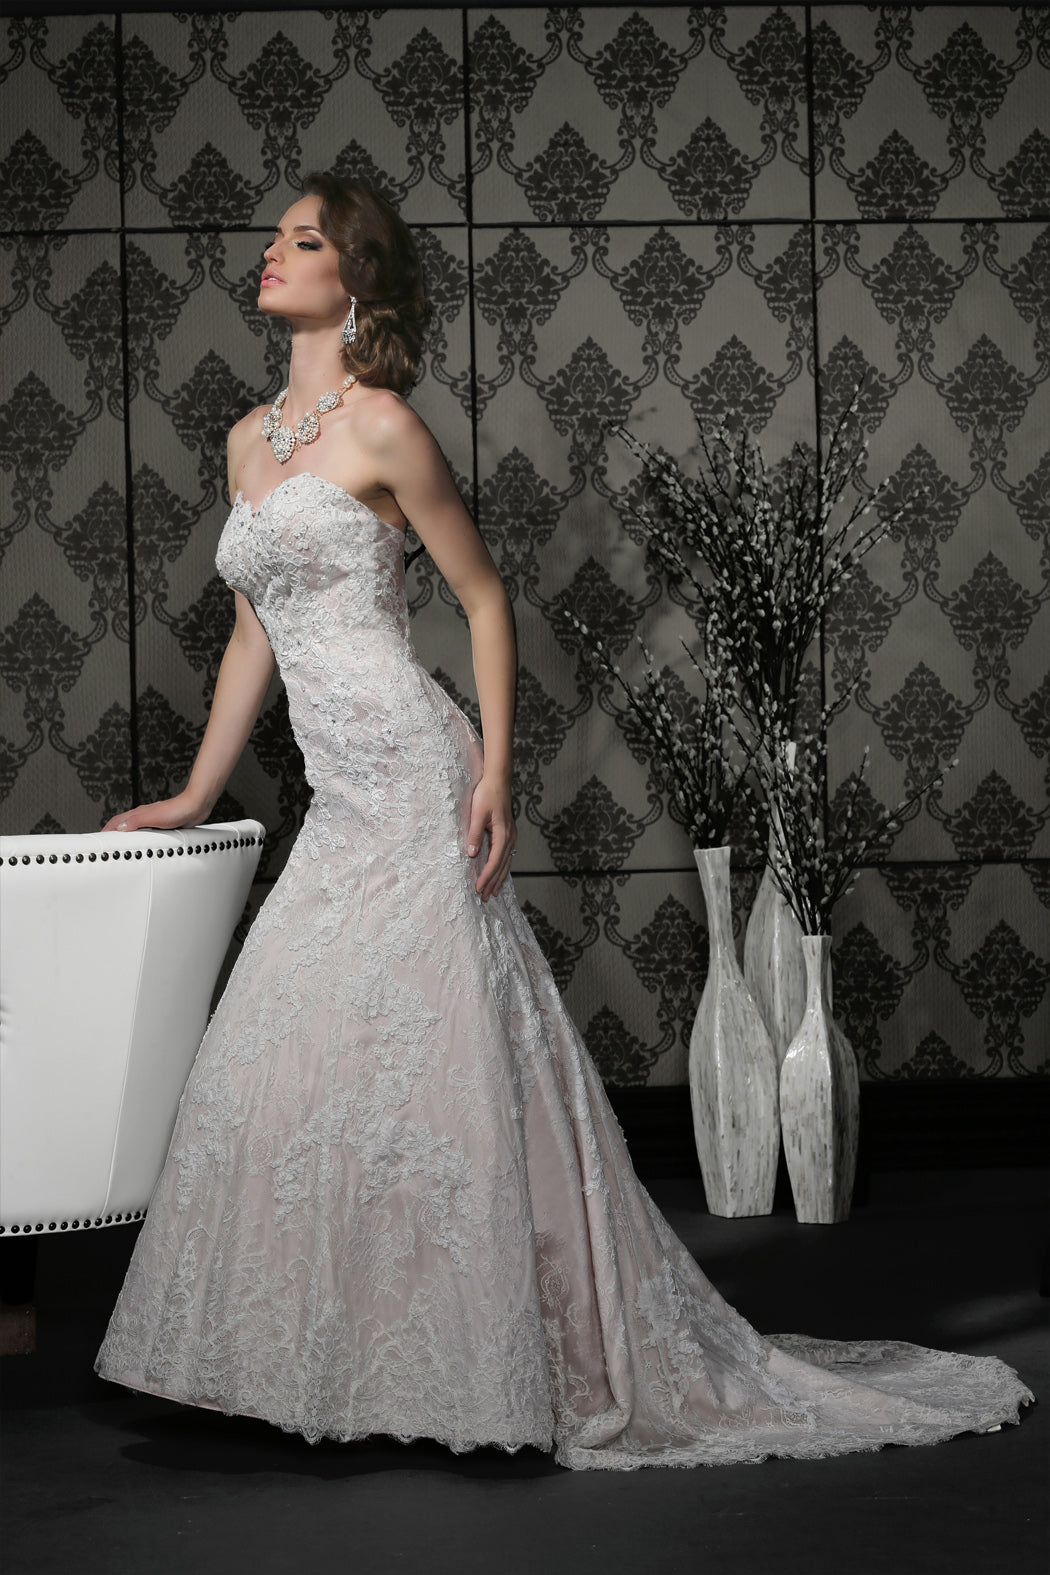 Impression Bridal Wedding Gown 10296